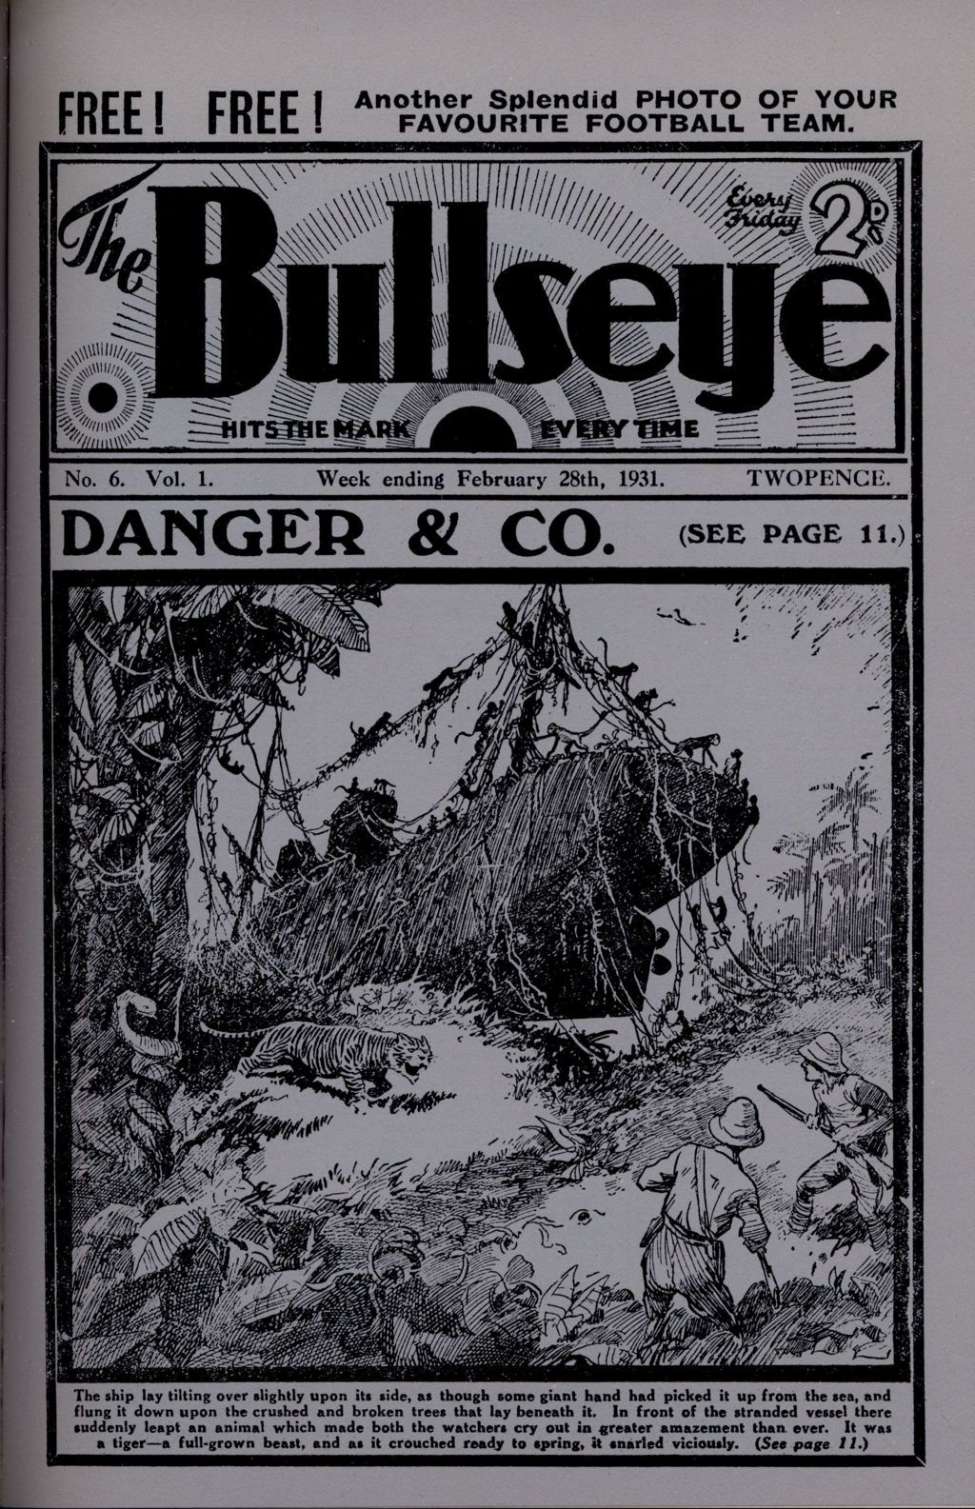 Comic Book Cover For The Bullseye v1 6 - Danger & Co.